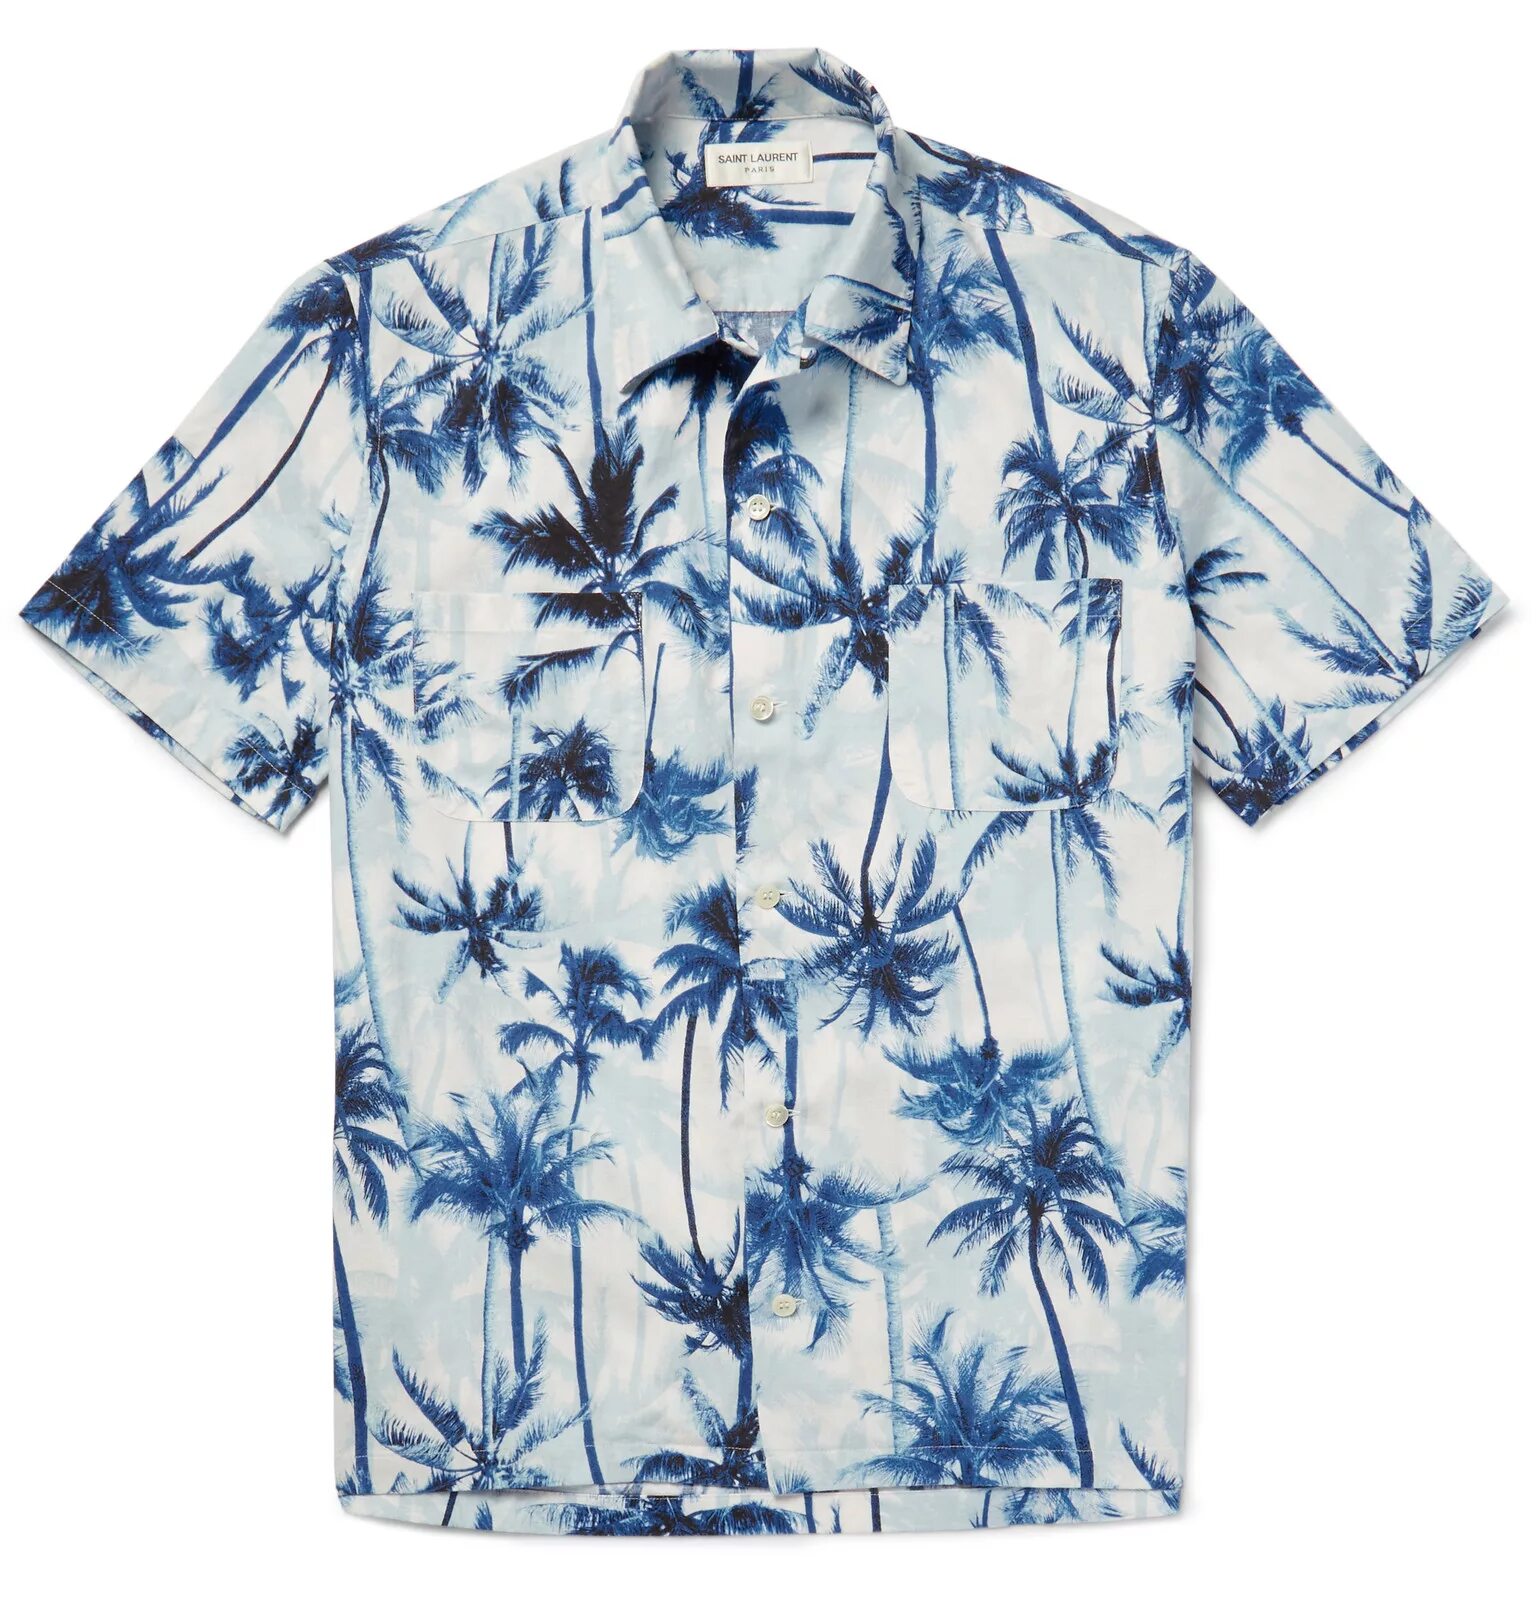 Рубашка с принтом купить. Рубашка Ричи Тозиера. Гавайская рубашка Ричи Тозиера. Рубашка с принтом. Рубашка с пальмами.